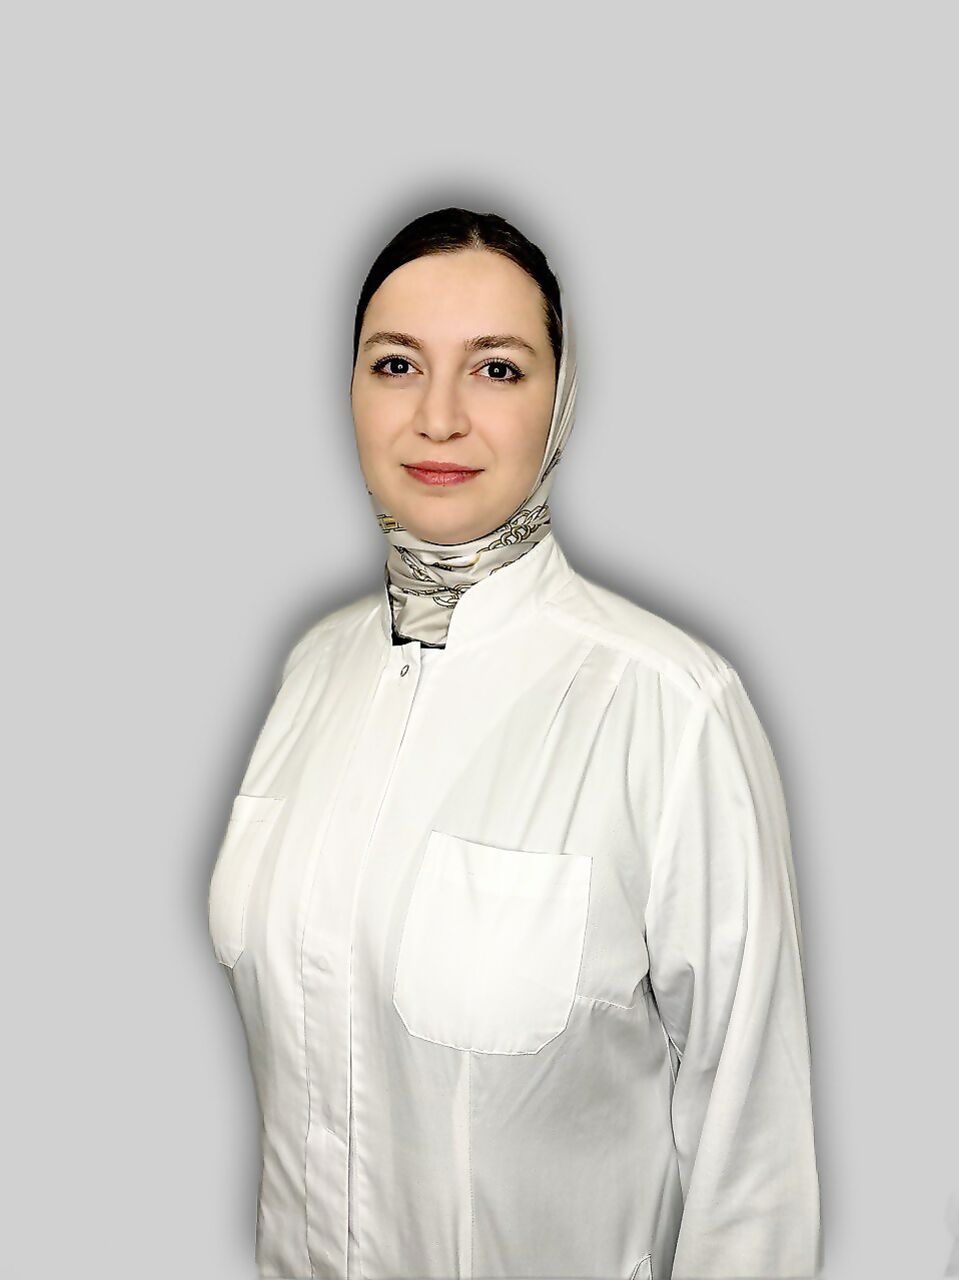 Vagapova Eliza Idrisovna